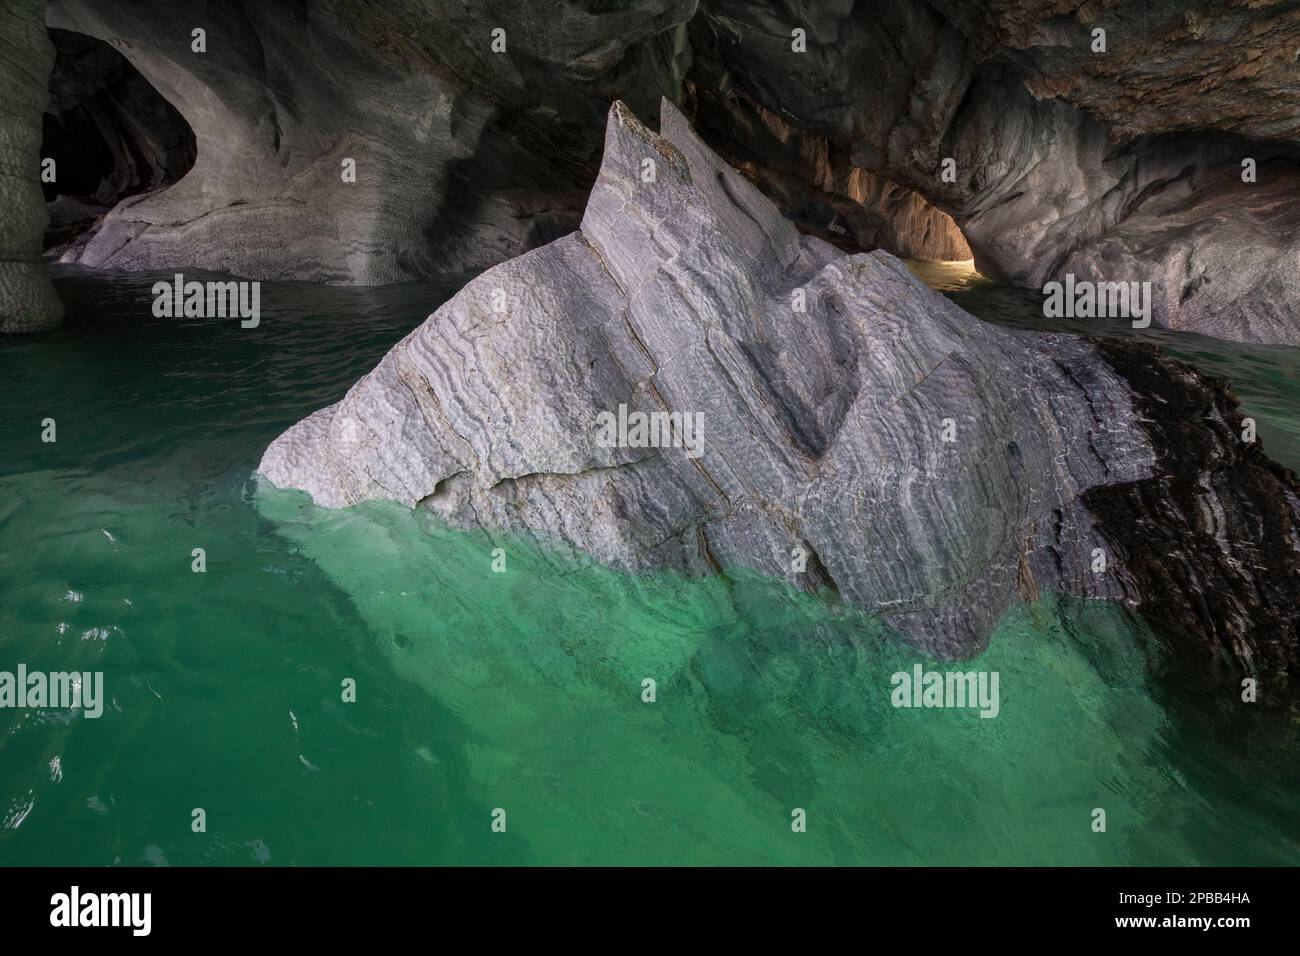 Marmo eroso che sorge da acque turchesi limpide, Grotte di marmo, Lago Generale Carrera, Patagonia Foto Stock